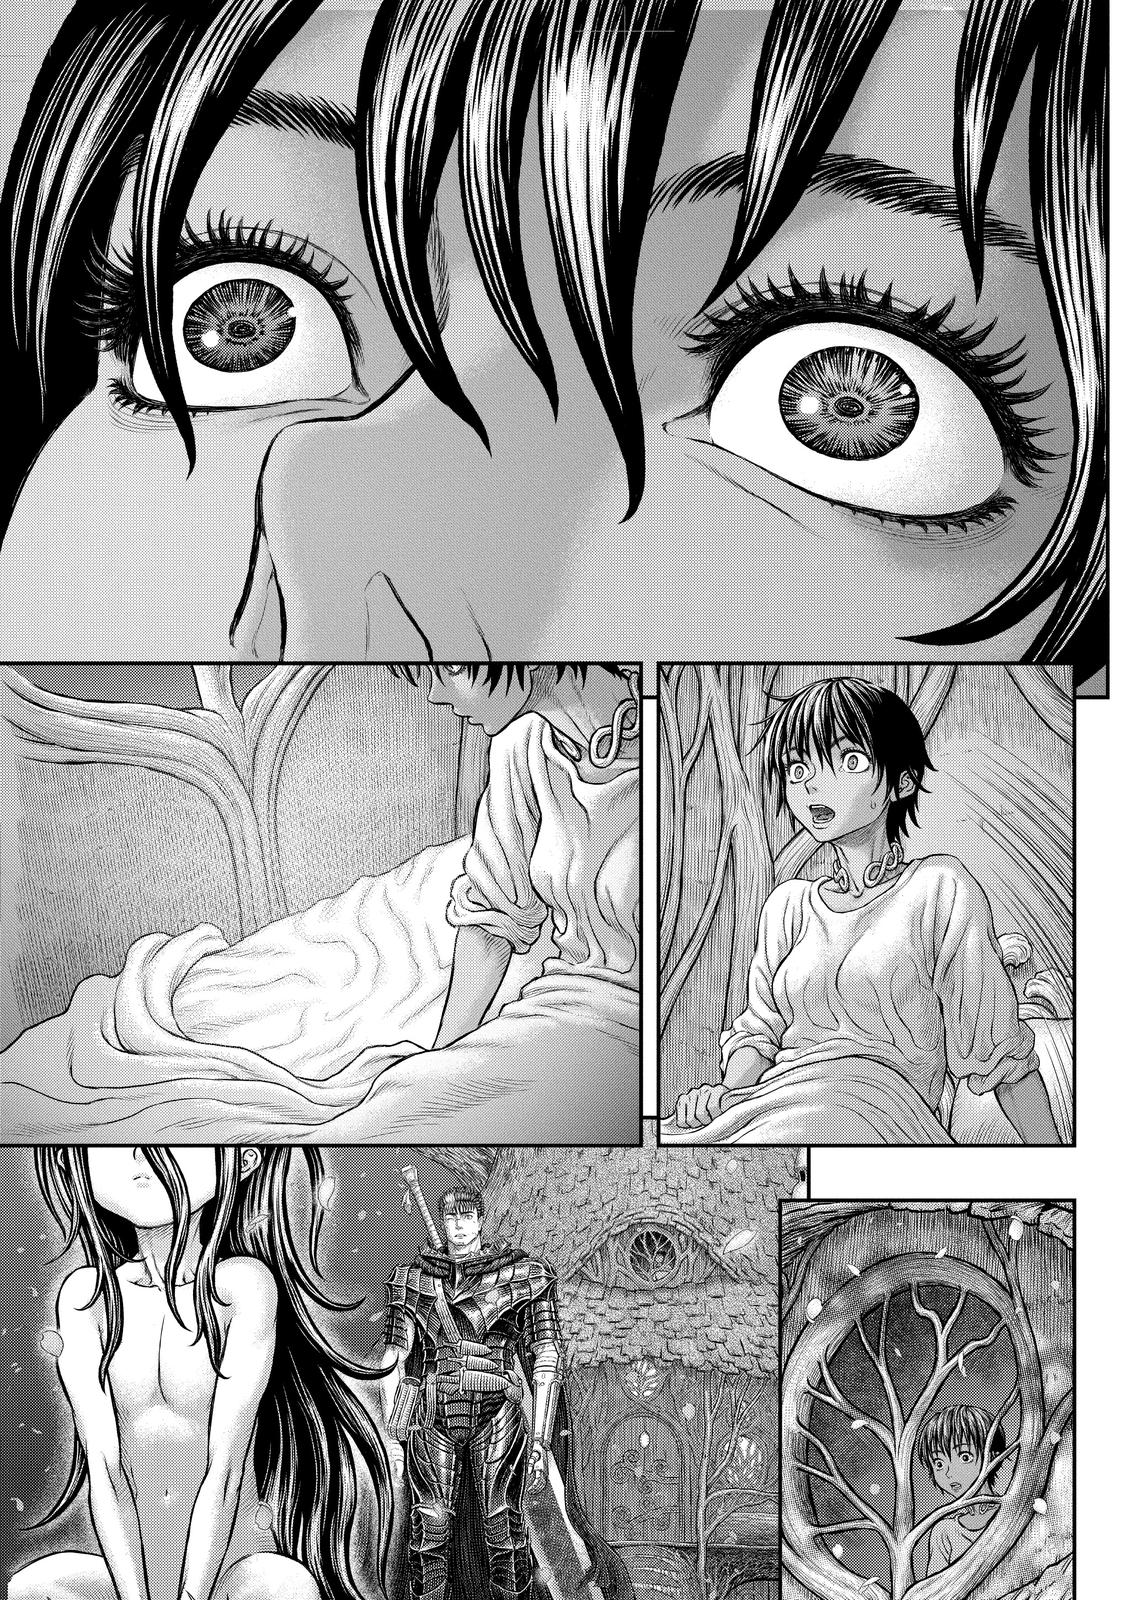 Berserk Manga Chapter 364 image 21